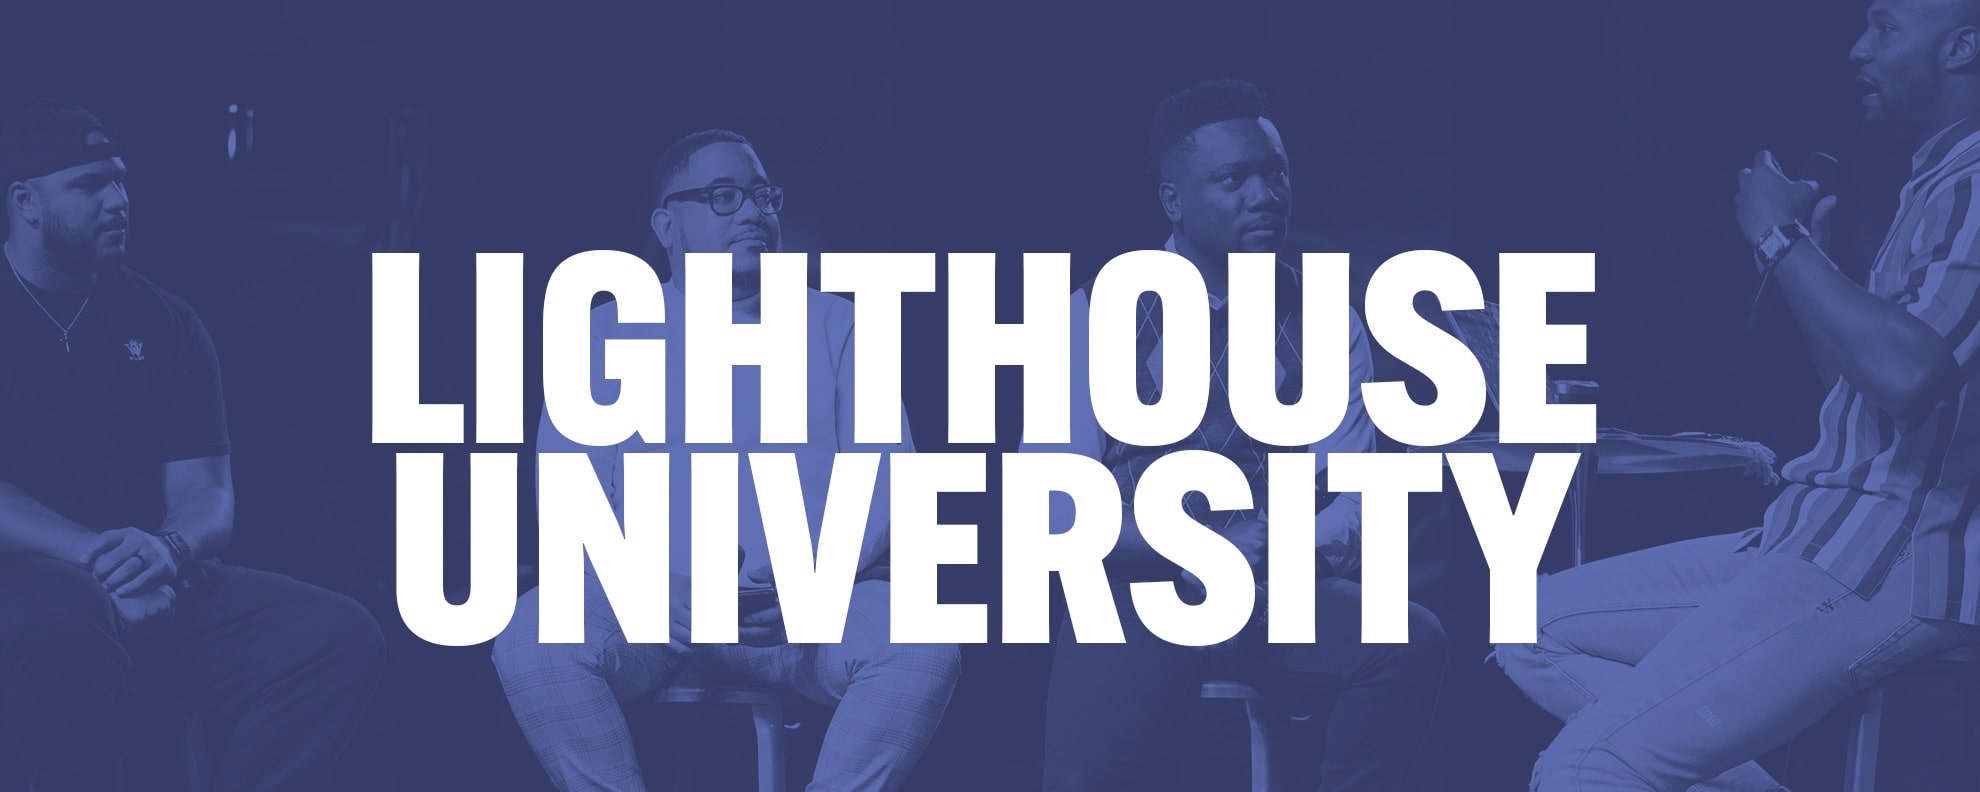 Lighthouse University